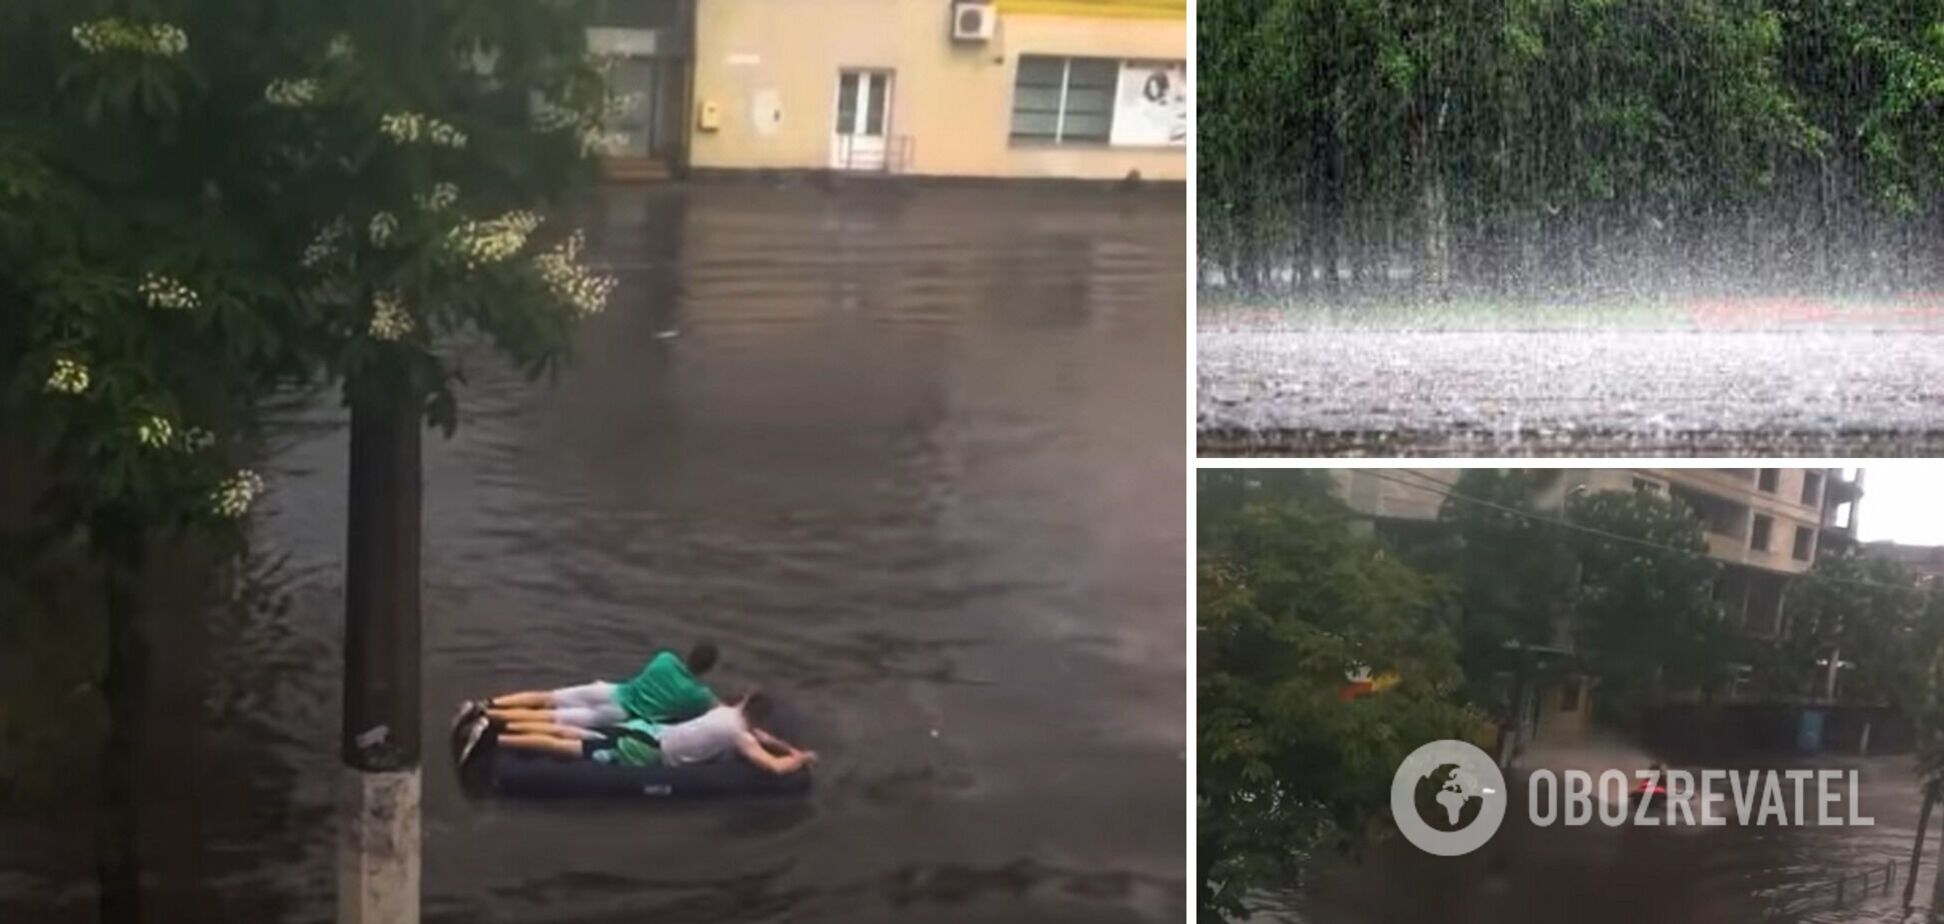 Житомир затопило після зливи: люди добираються вплав на матрацах і гідроциклах. Фото, відео